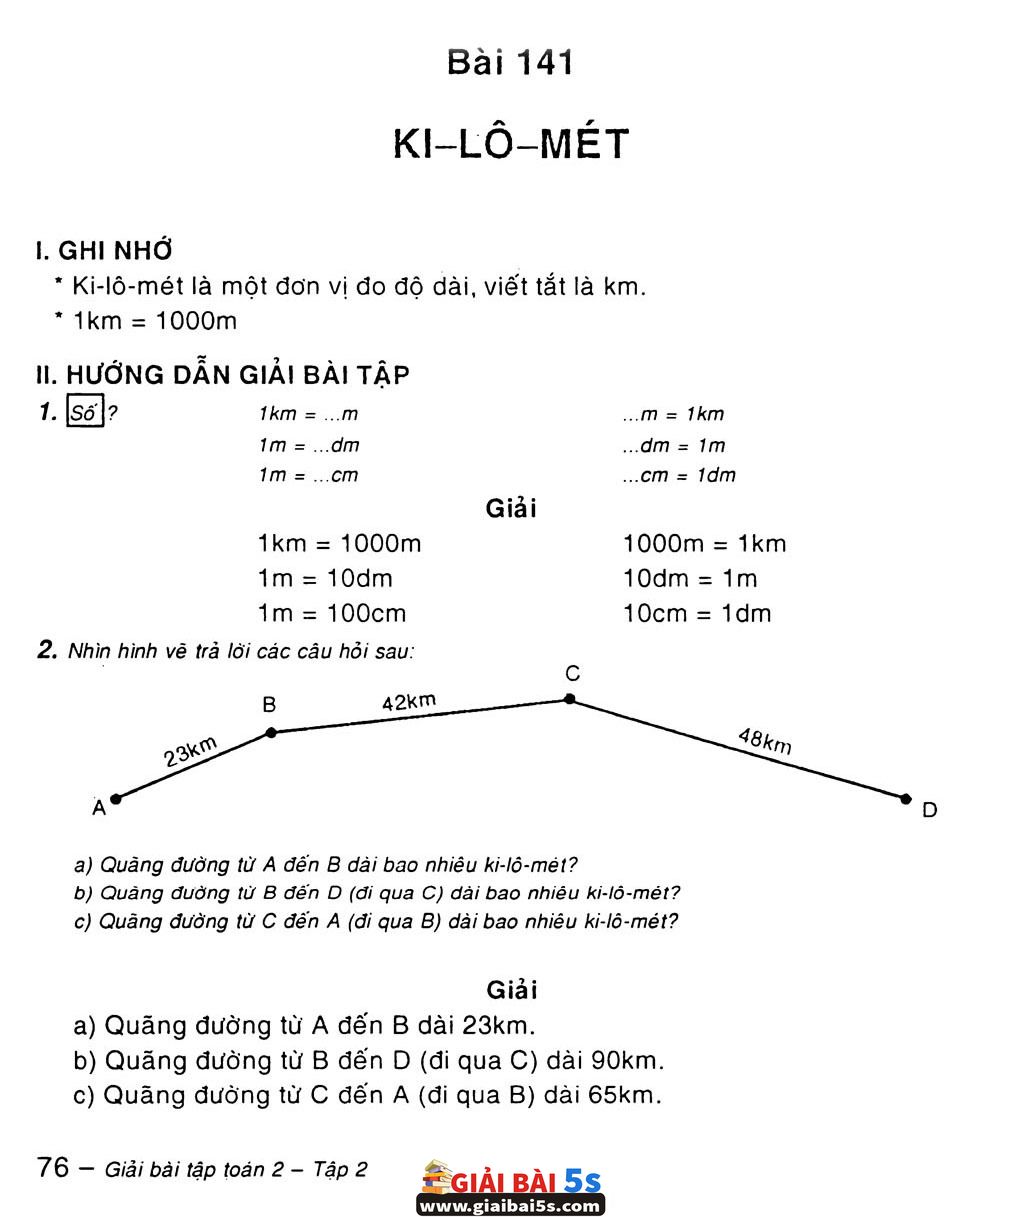 Bài 141: Ki-lô-mét